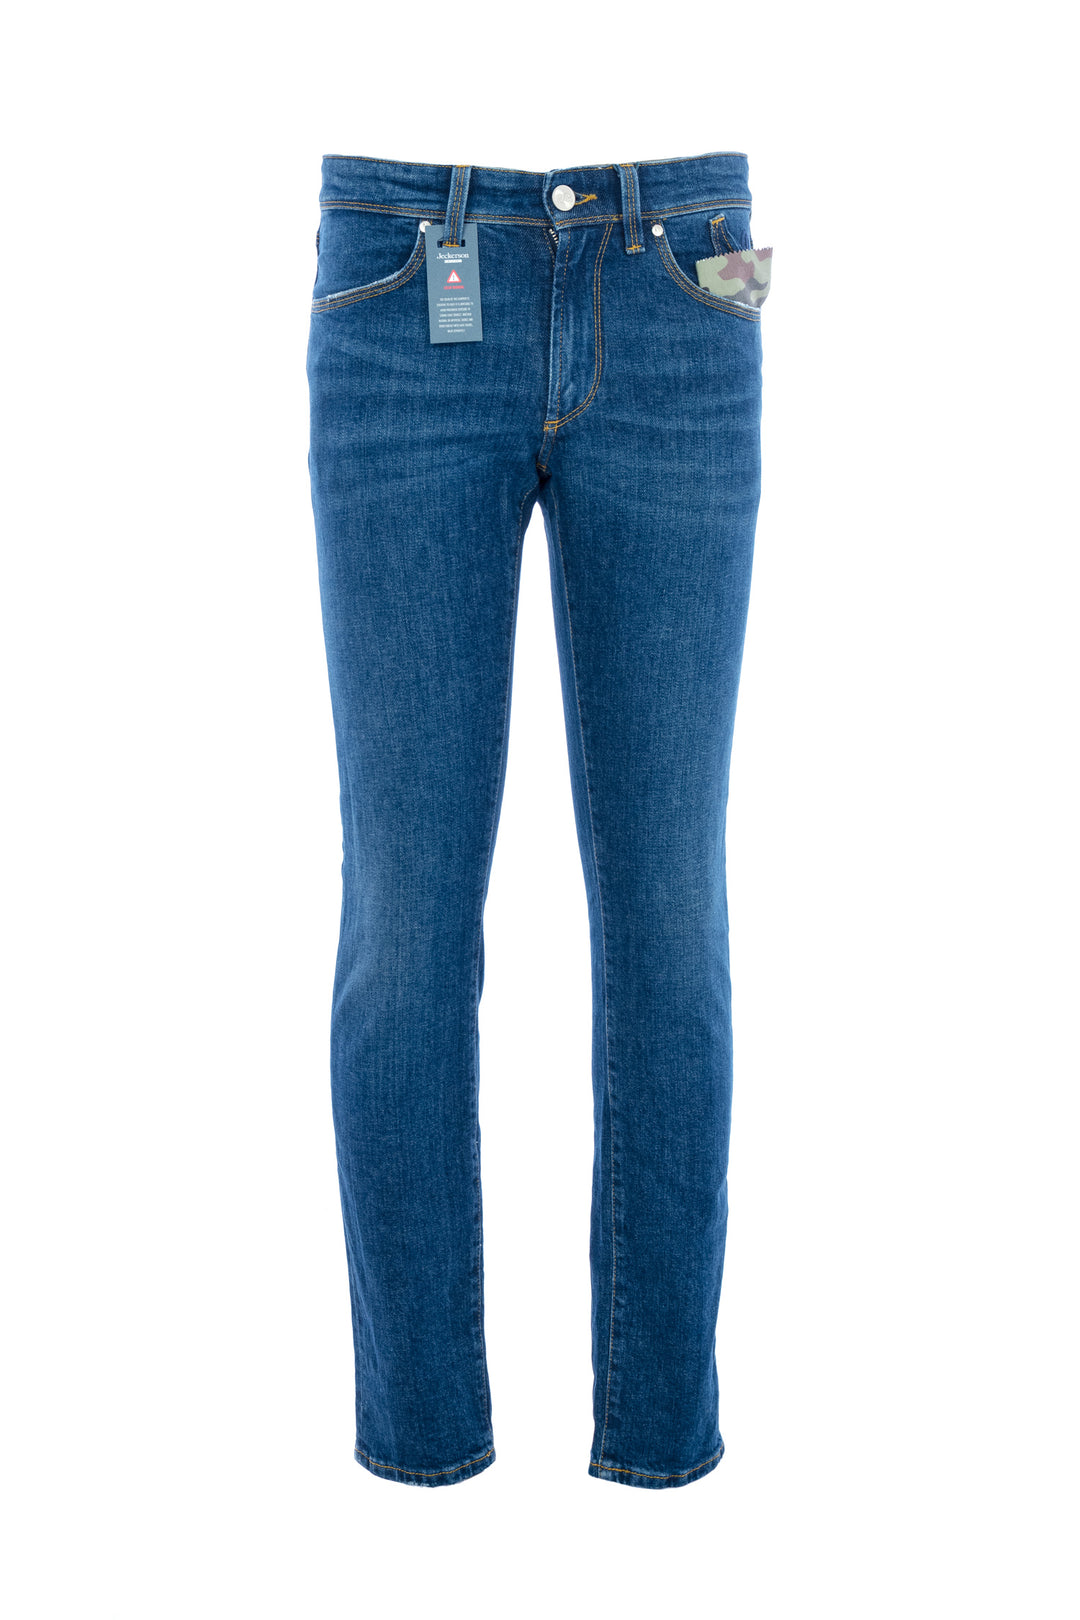 JECKERSON Jeans cinque tasche in denim stretch lavaggio medio - Mancinelli 1954